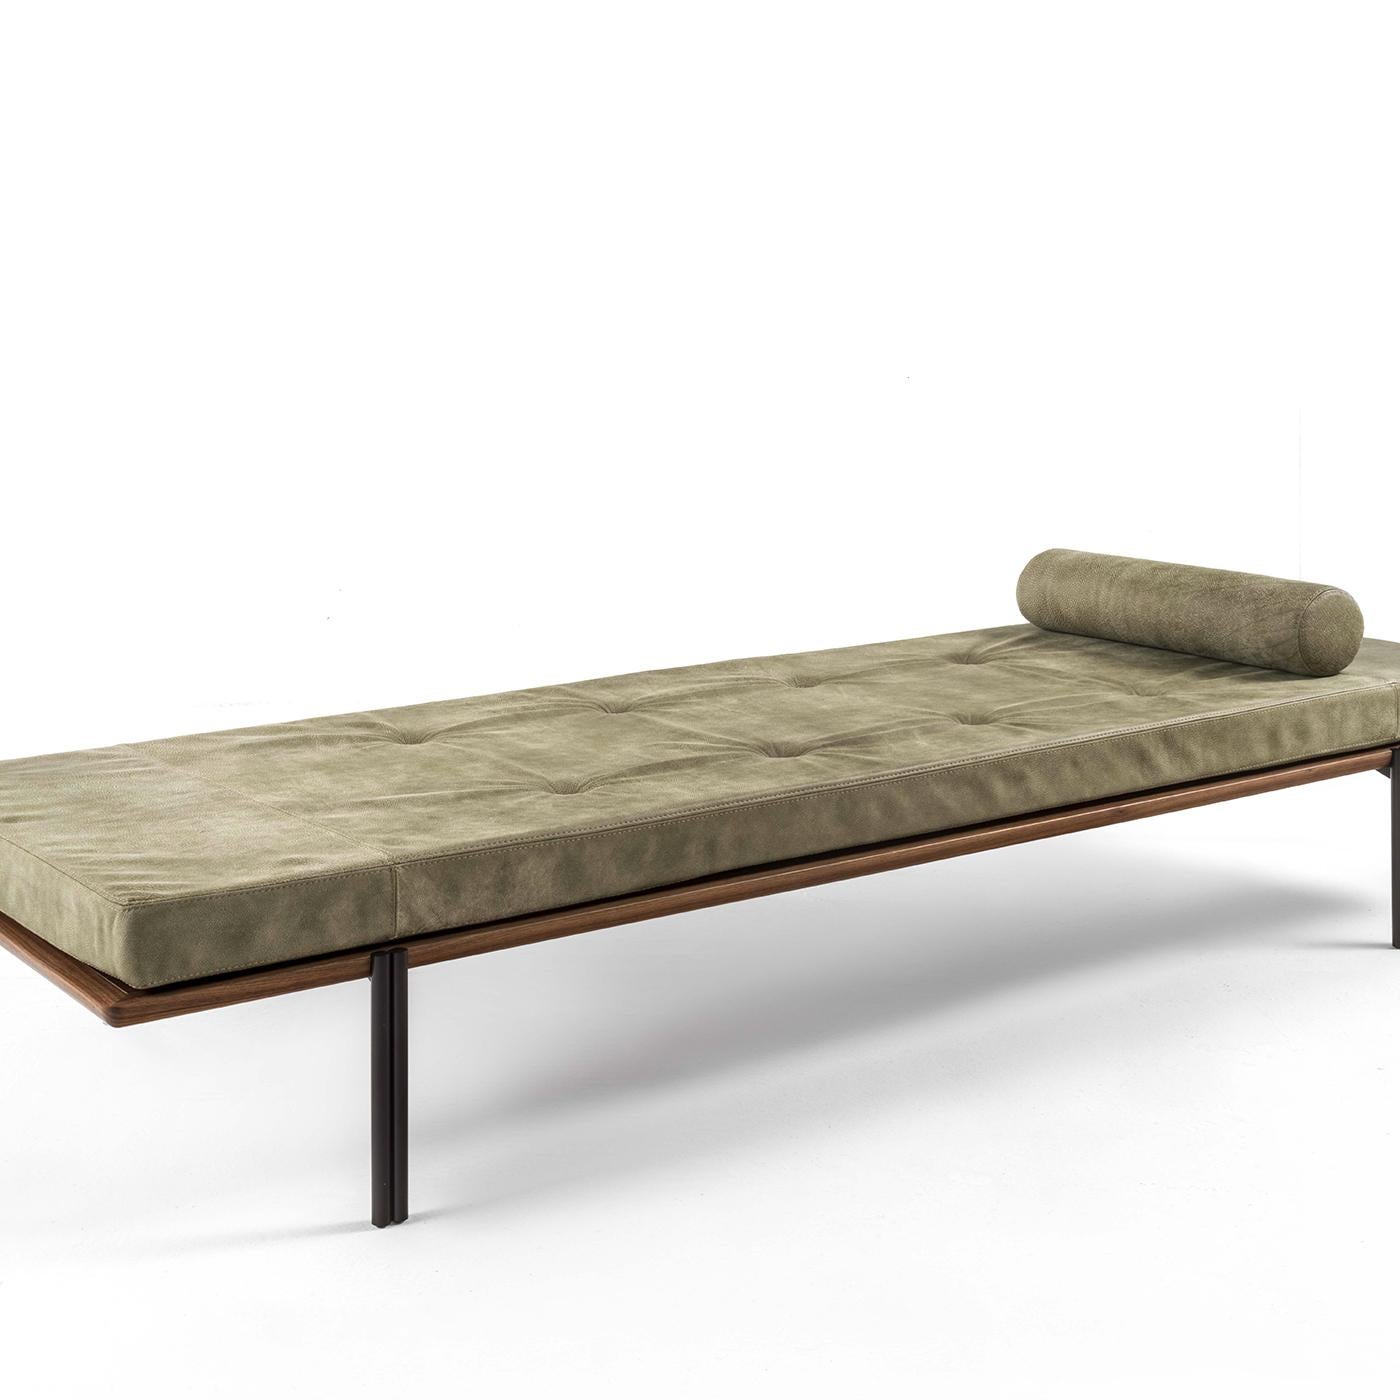 Simple dans sa conception, le lit de jour Jean est fonctionnel, confortable et extrêmement élégant. Avec son assise en cuir sur une base en bois, il s'agit d'une union de la forme et de la fonction, ce qui en fait un ajout dynamique et sophistiqué à